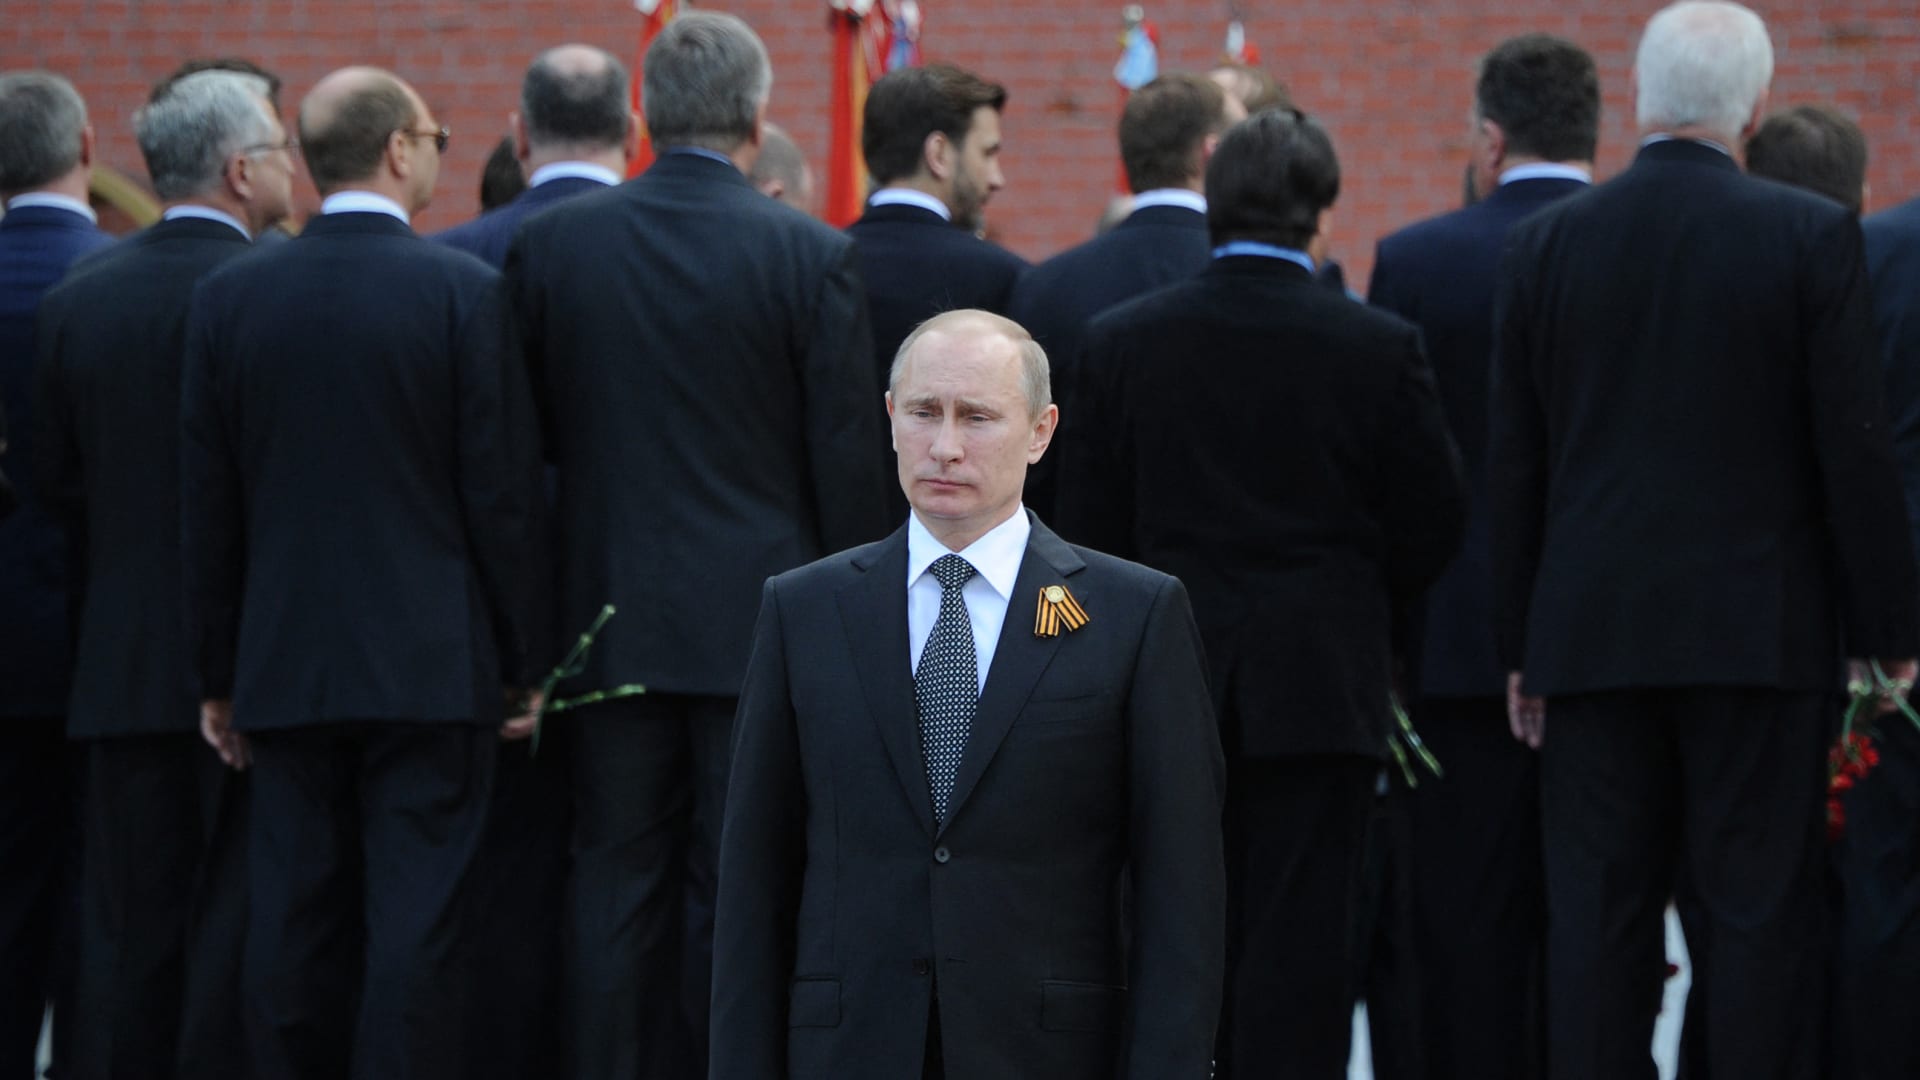 صورة ارشيفية للرئيس الروسي بوتين خلال احتفال العام 2018